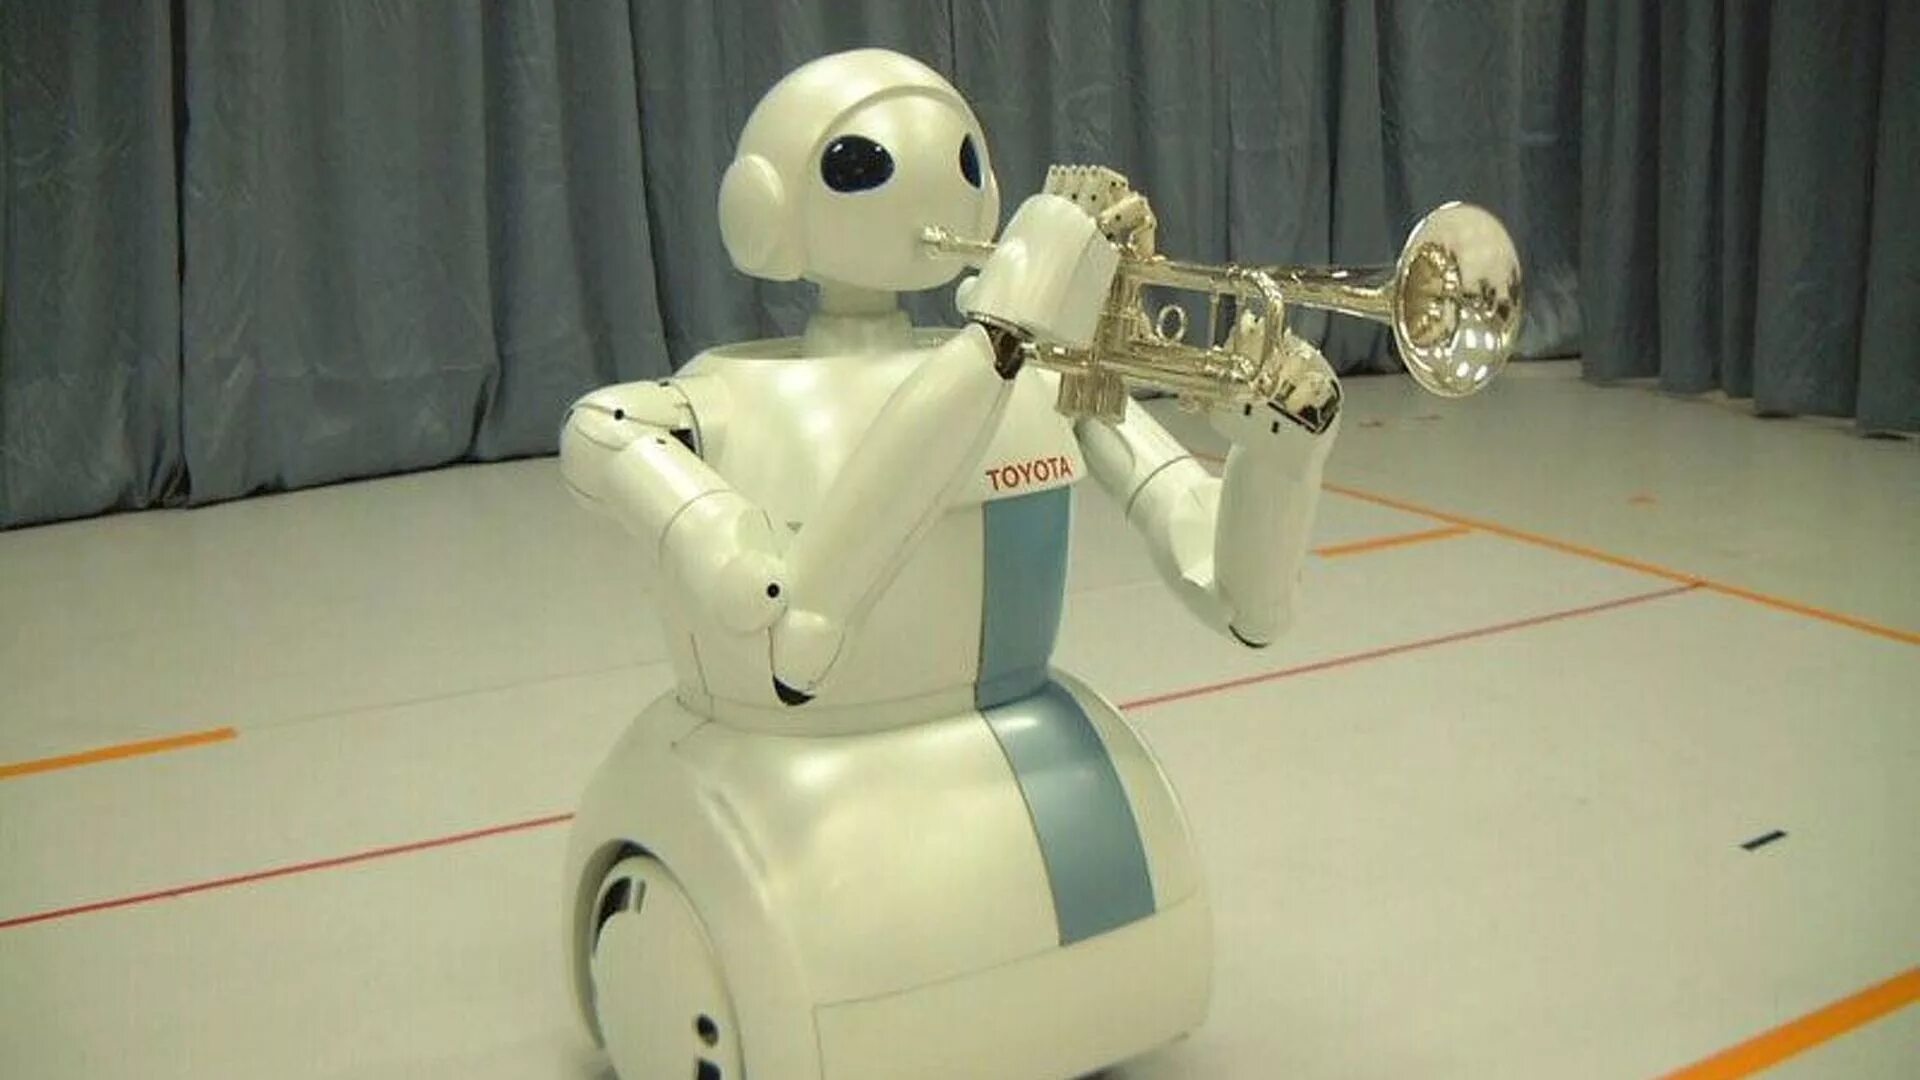 First robot. Японские роботы. Робот Toyota. Старый робот. Первый робот в мире.